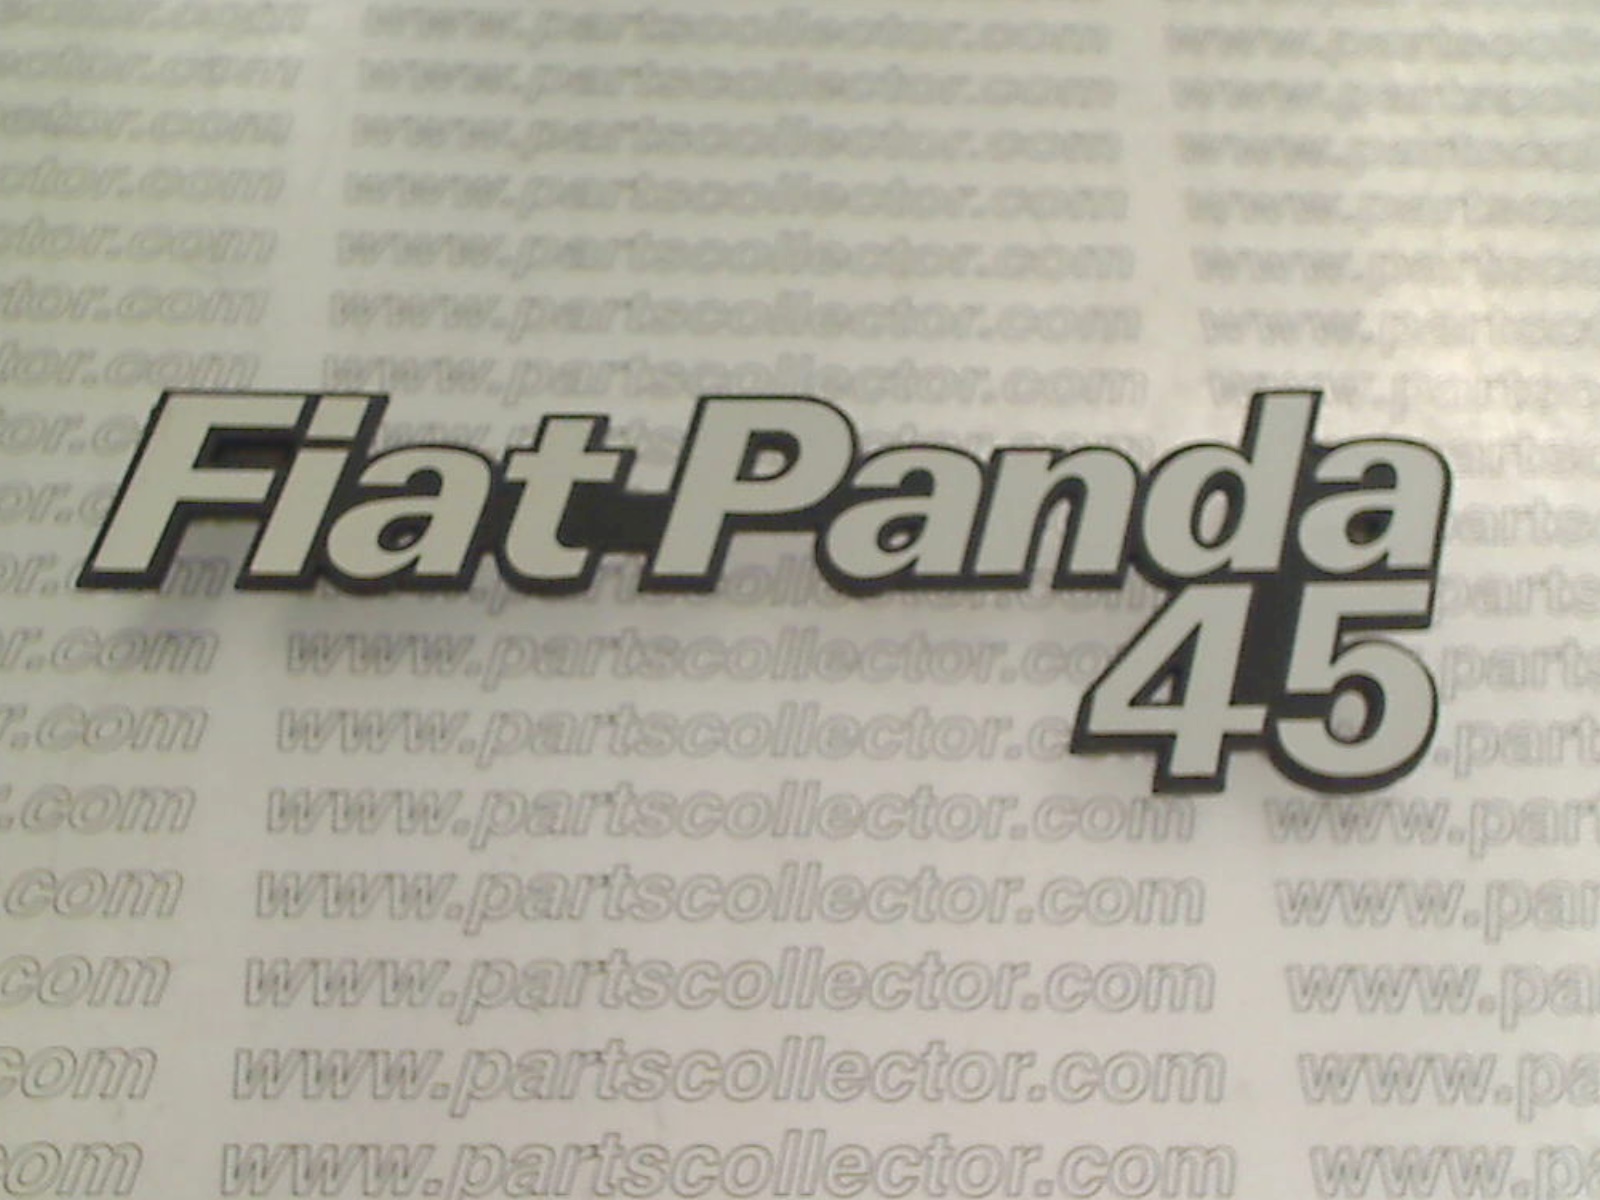 FIAT PANDA 45 EMBLEM